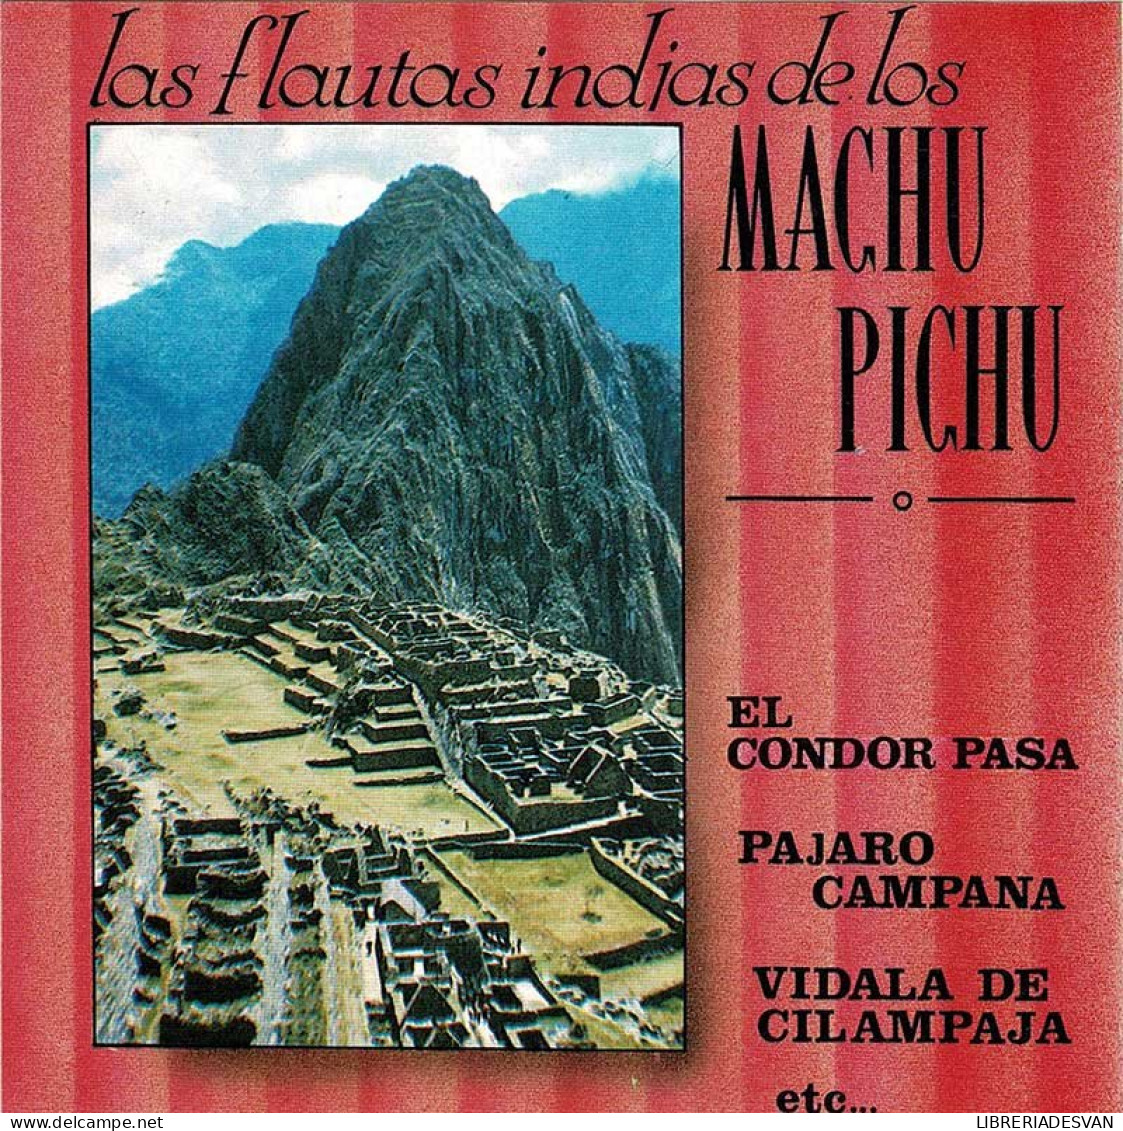 Las Flautas Indias De Los Machu Pichu. CD - Country Y Folk